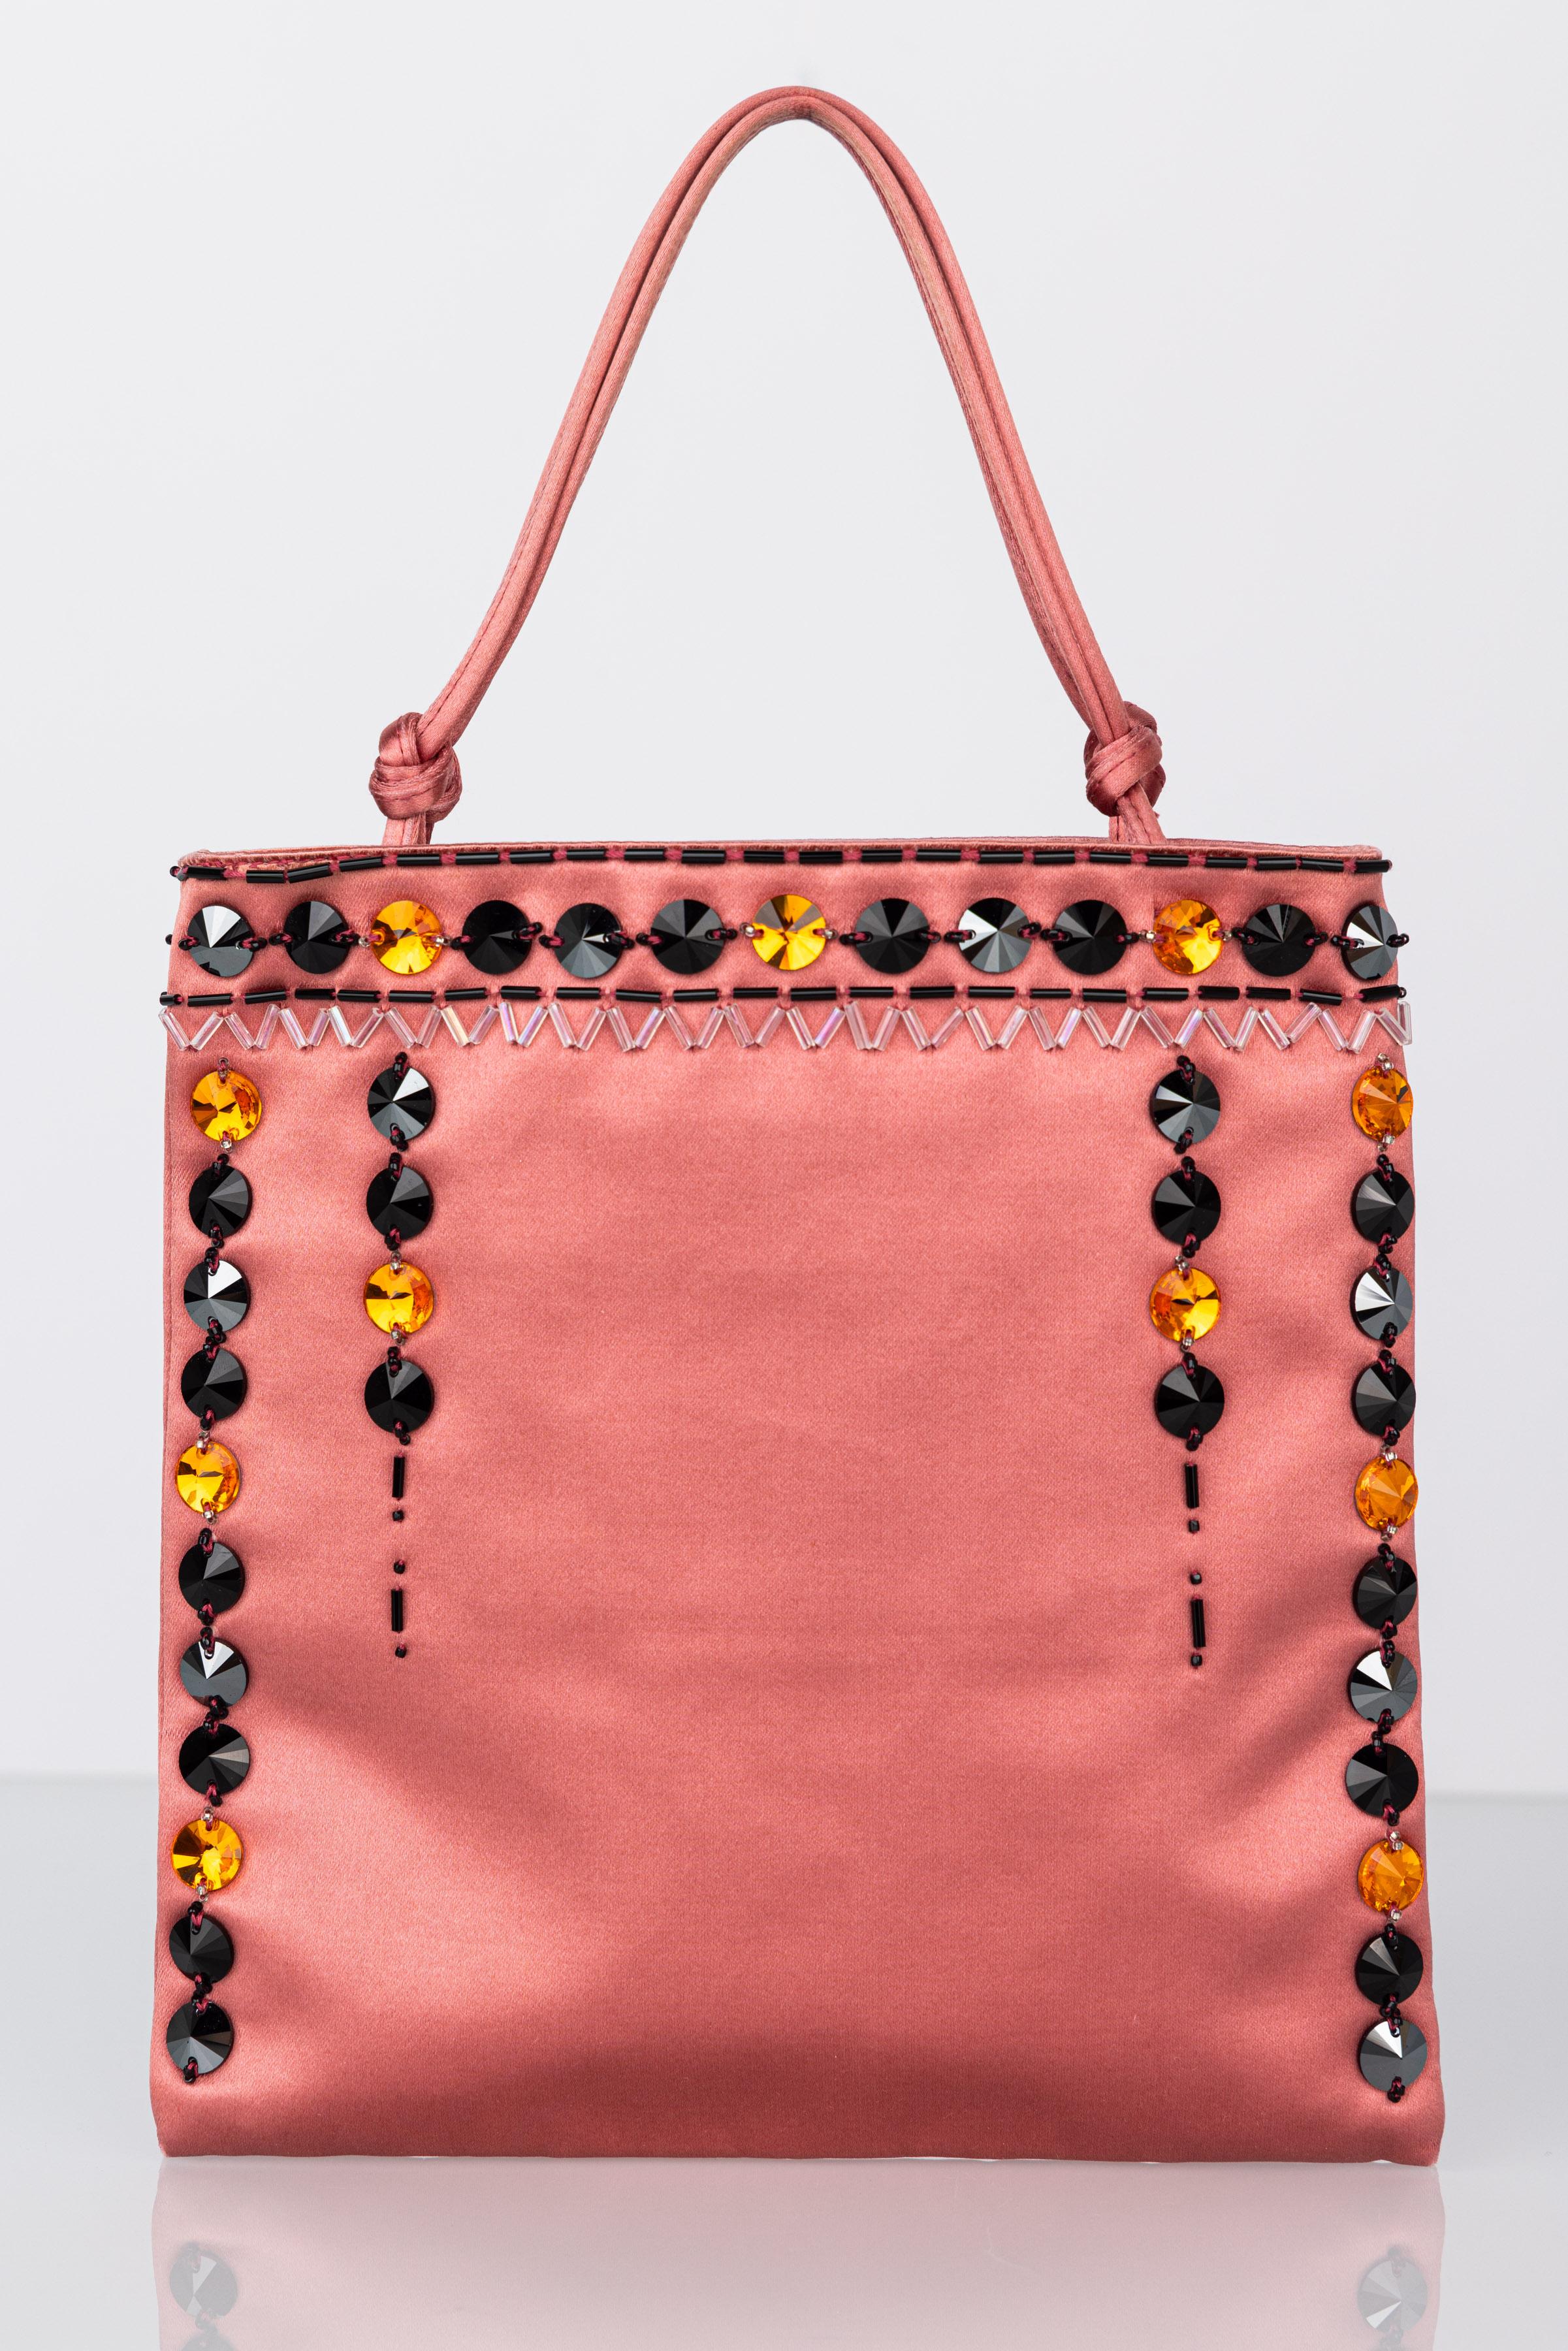 Ce sac Prada est réalisé en soie rose avec des bijoux et des perles en cristal jaune, noir et étain qui attirent la lumière. Une anse nouée sur le dessus pour le porter au bras, parfait pour la journée ou le soir.

En très bon état avec une légère